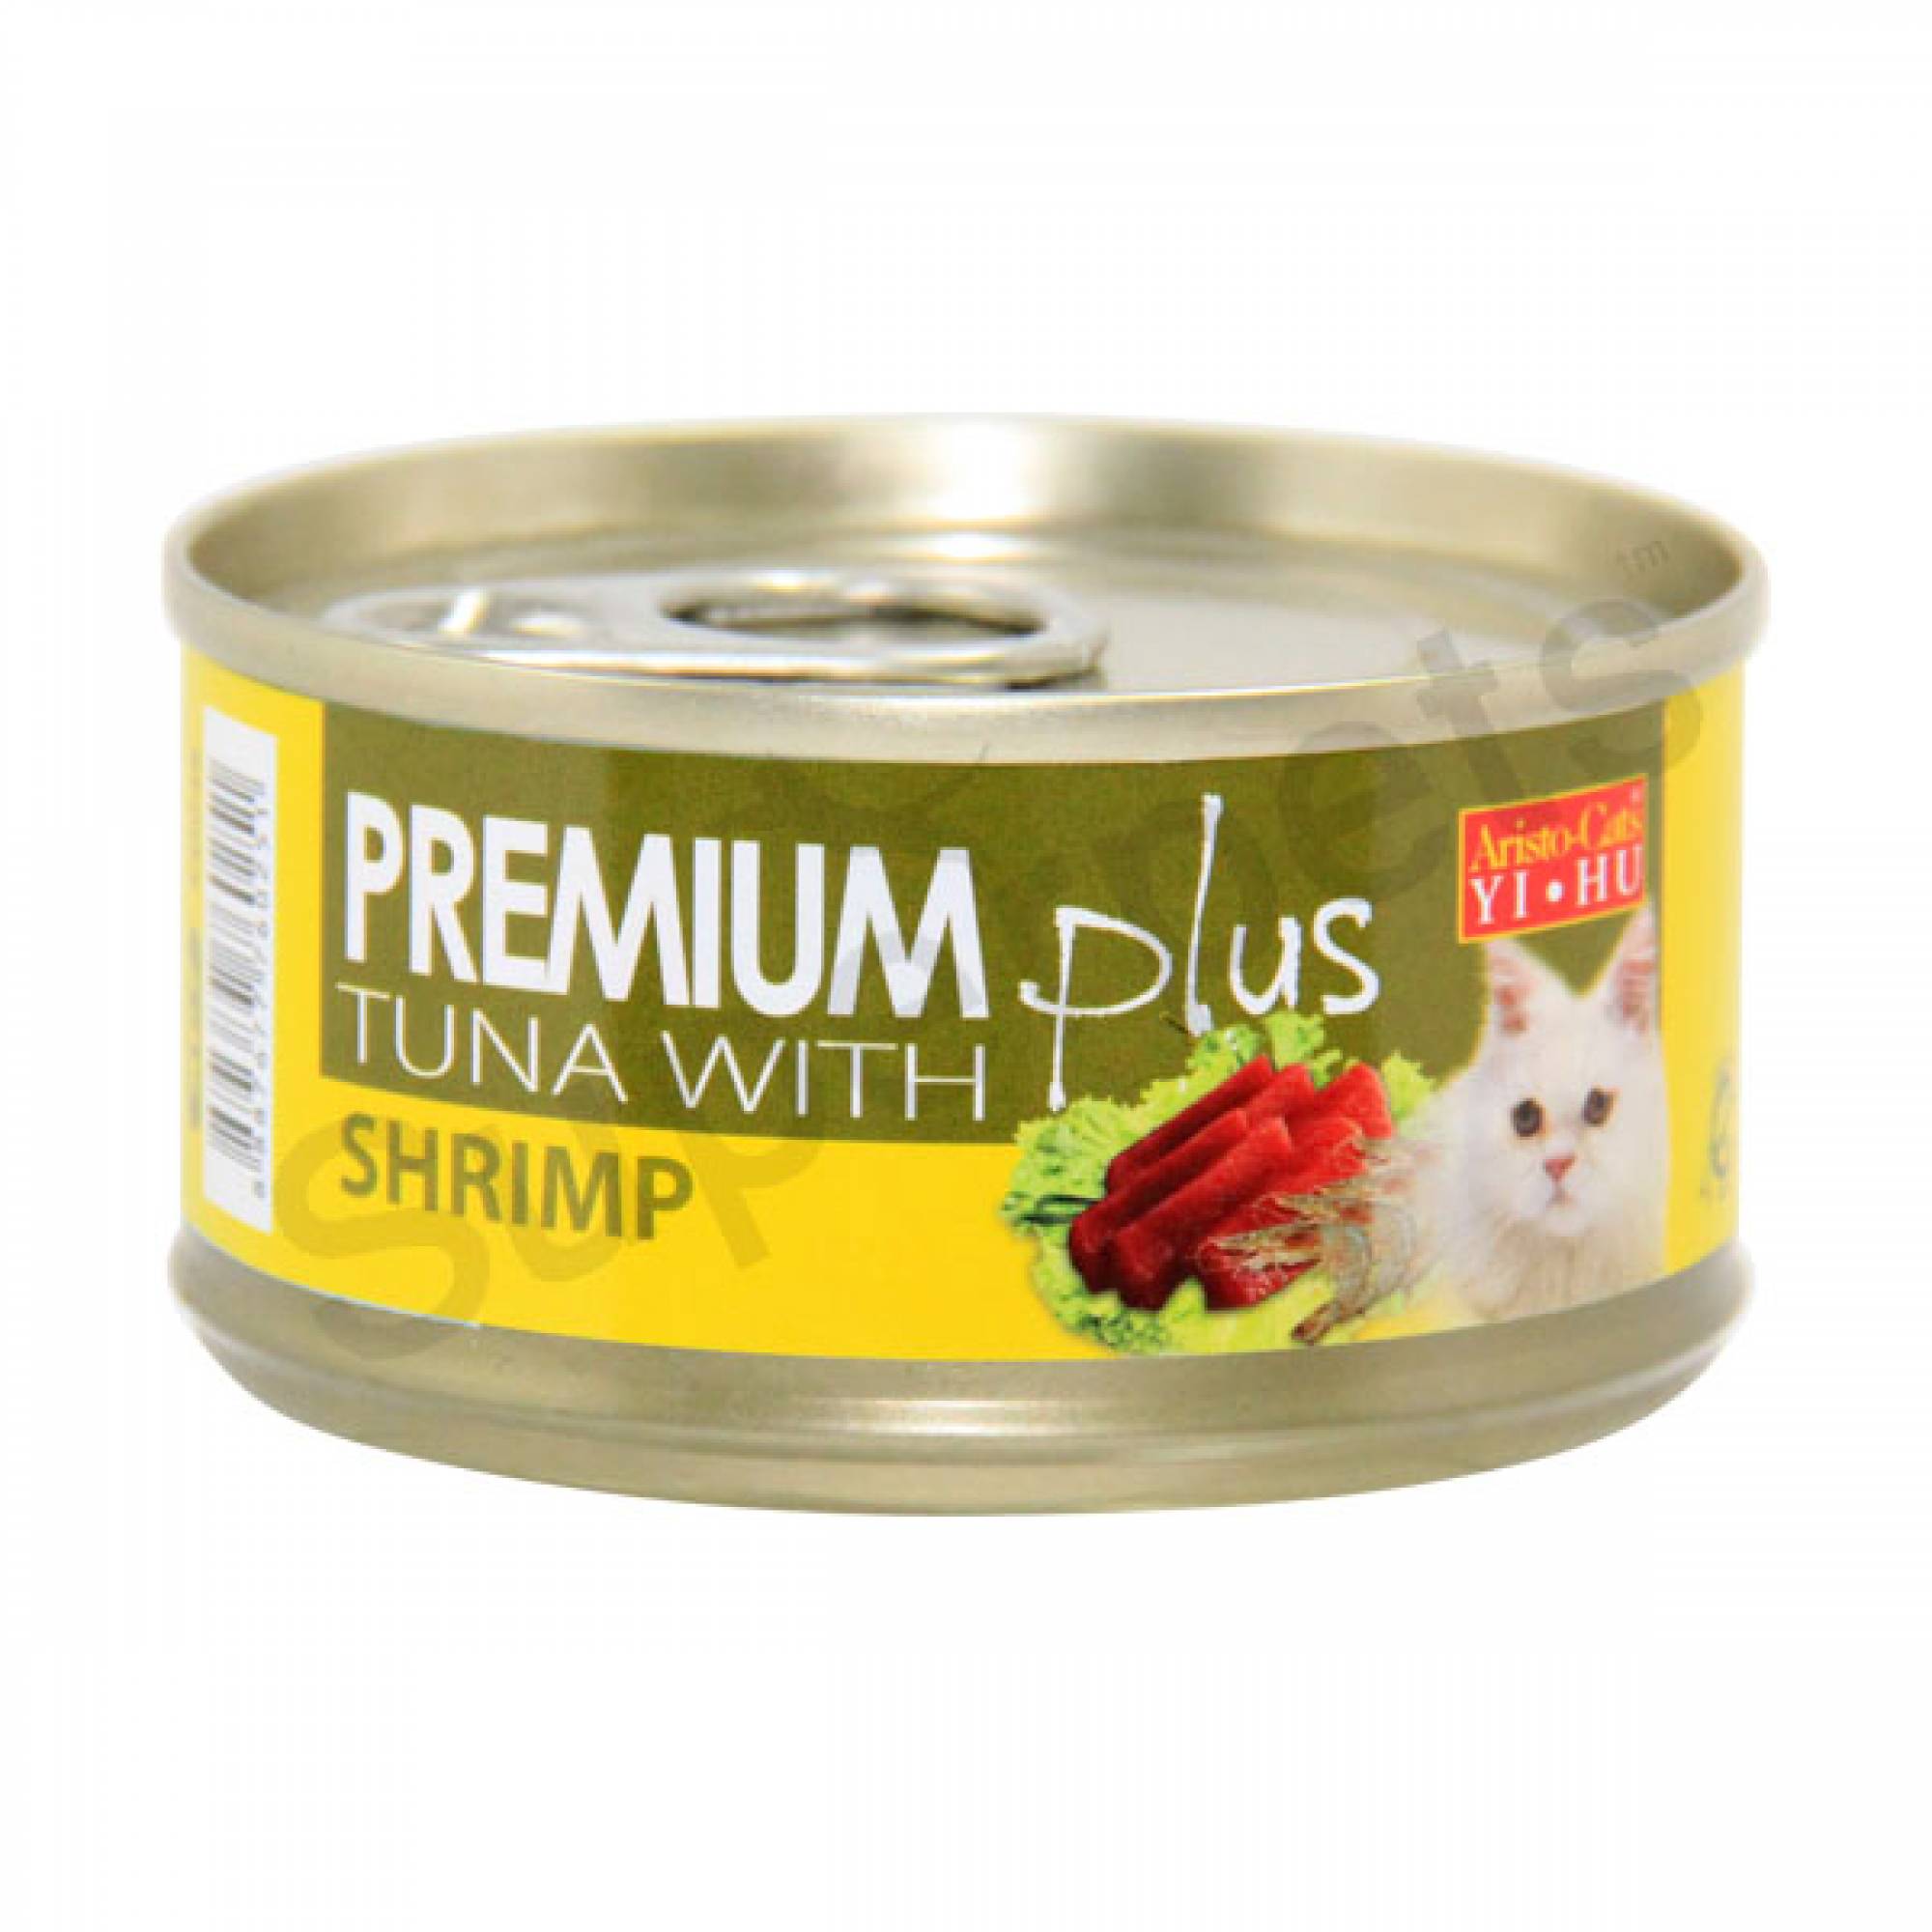 Aristo-Cats - Premium Plus - Tuna with Shrimp 80g